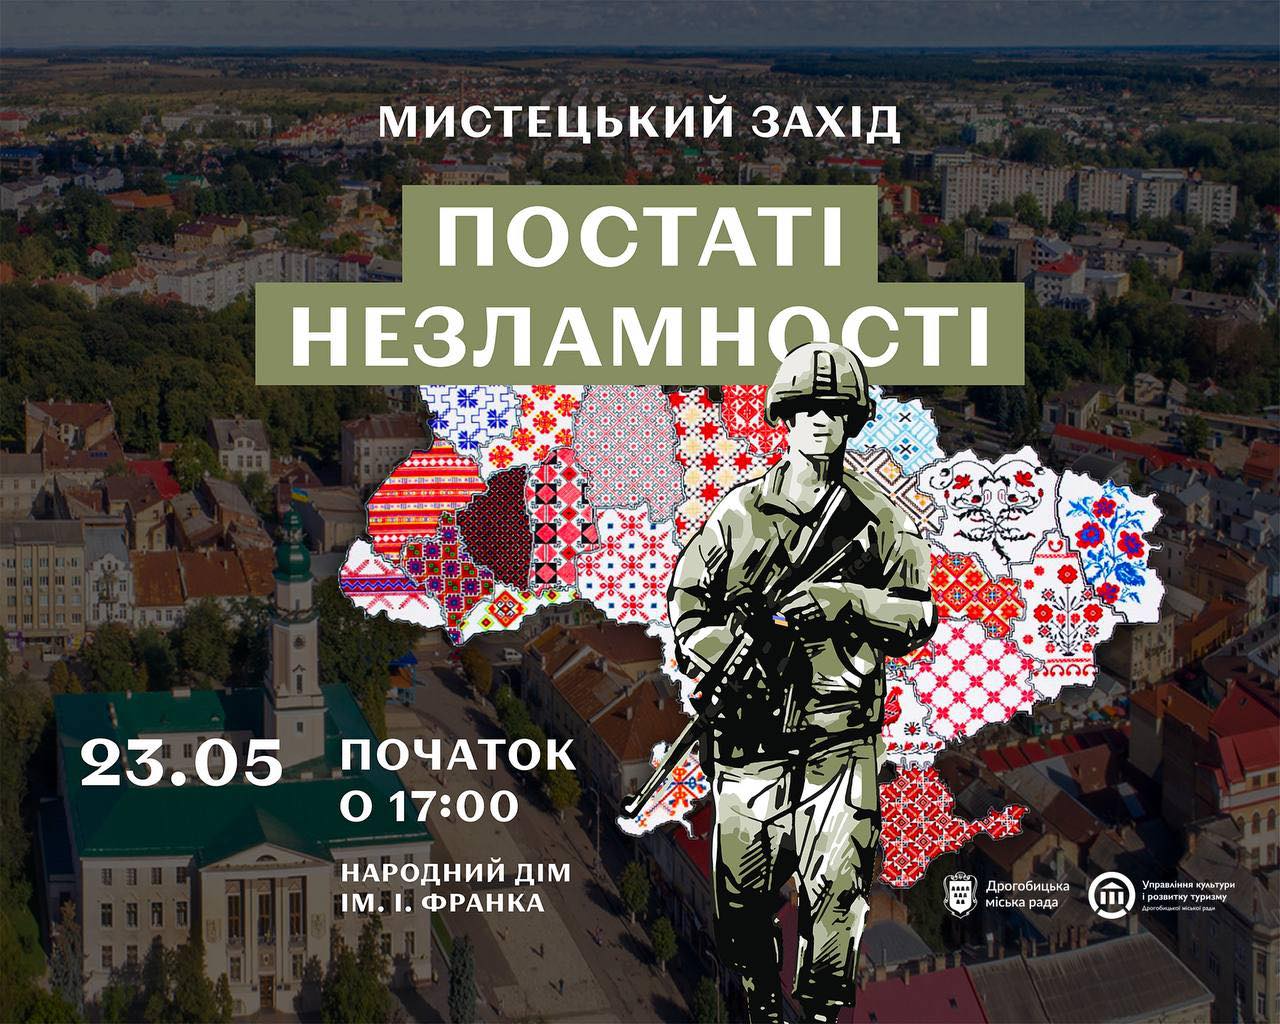 «Постаті незламності»: у Дрогобичі відбудеться мистецький захід до Дня Героя